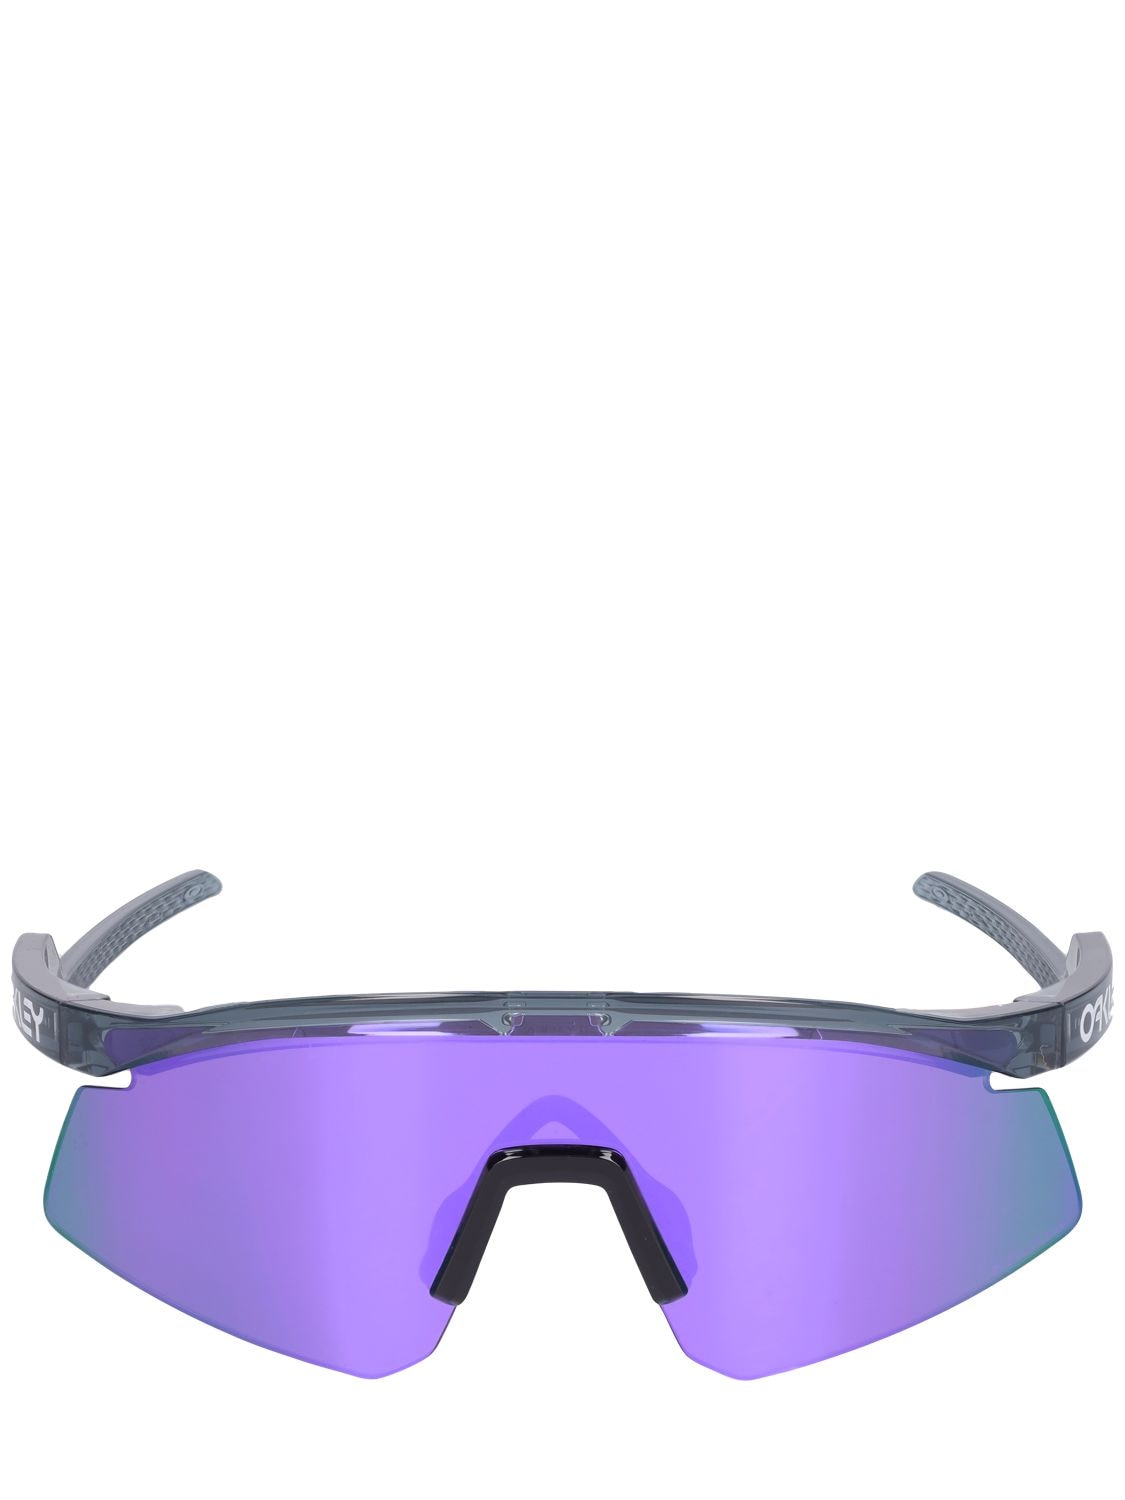 Oakley Hydra Prizm Mask Sunglasses In Schwarz,violett